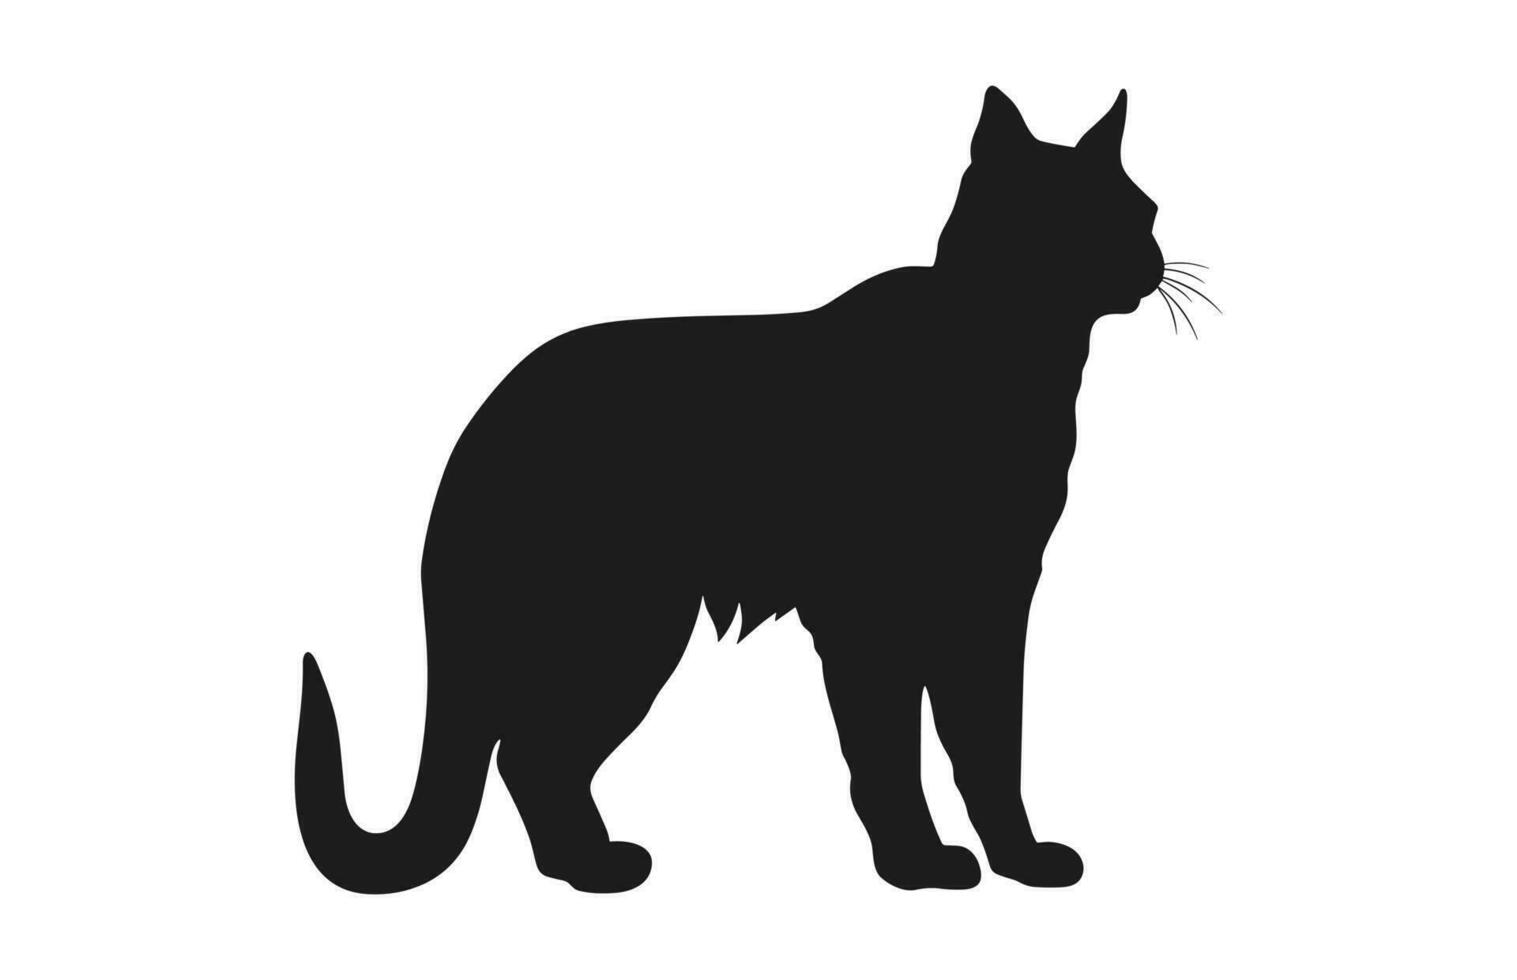 Luchs Katze schwarz Silhouette Vektor kostenlos